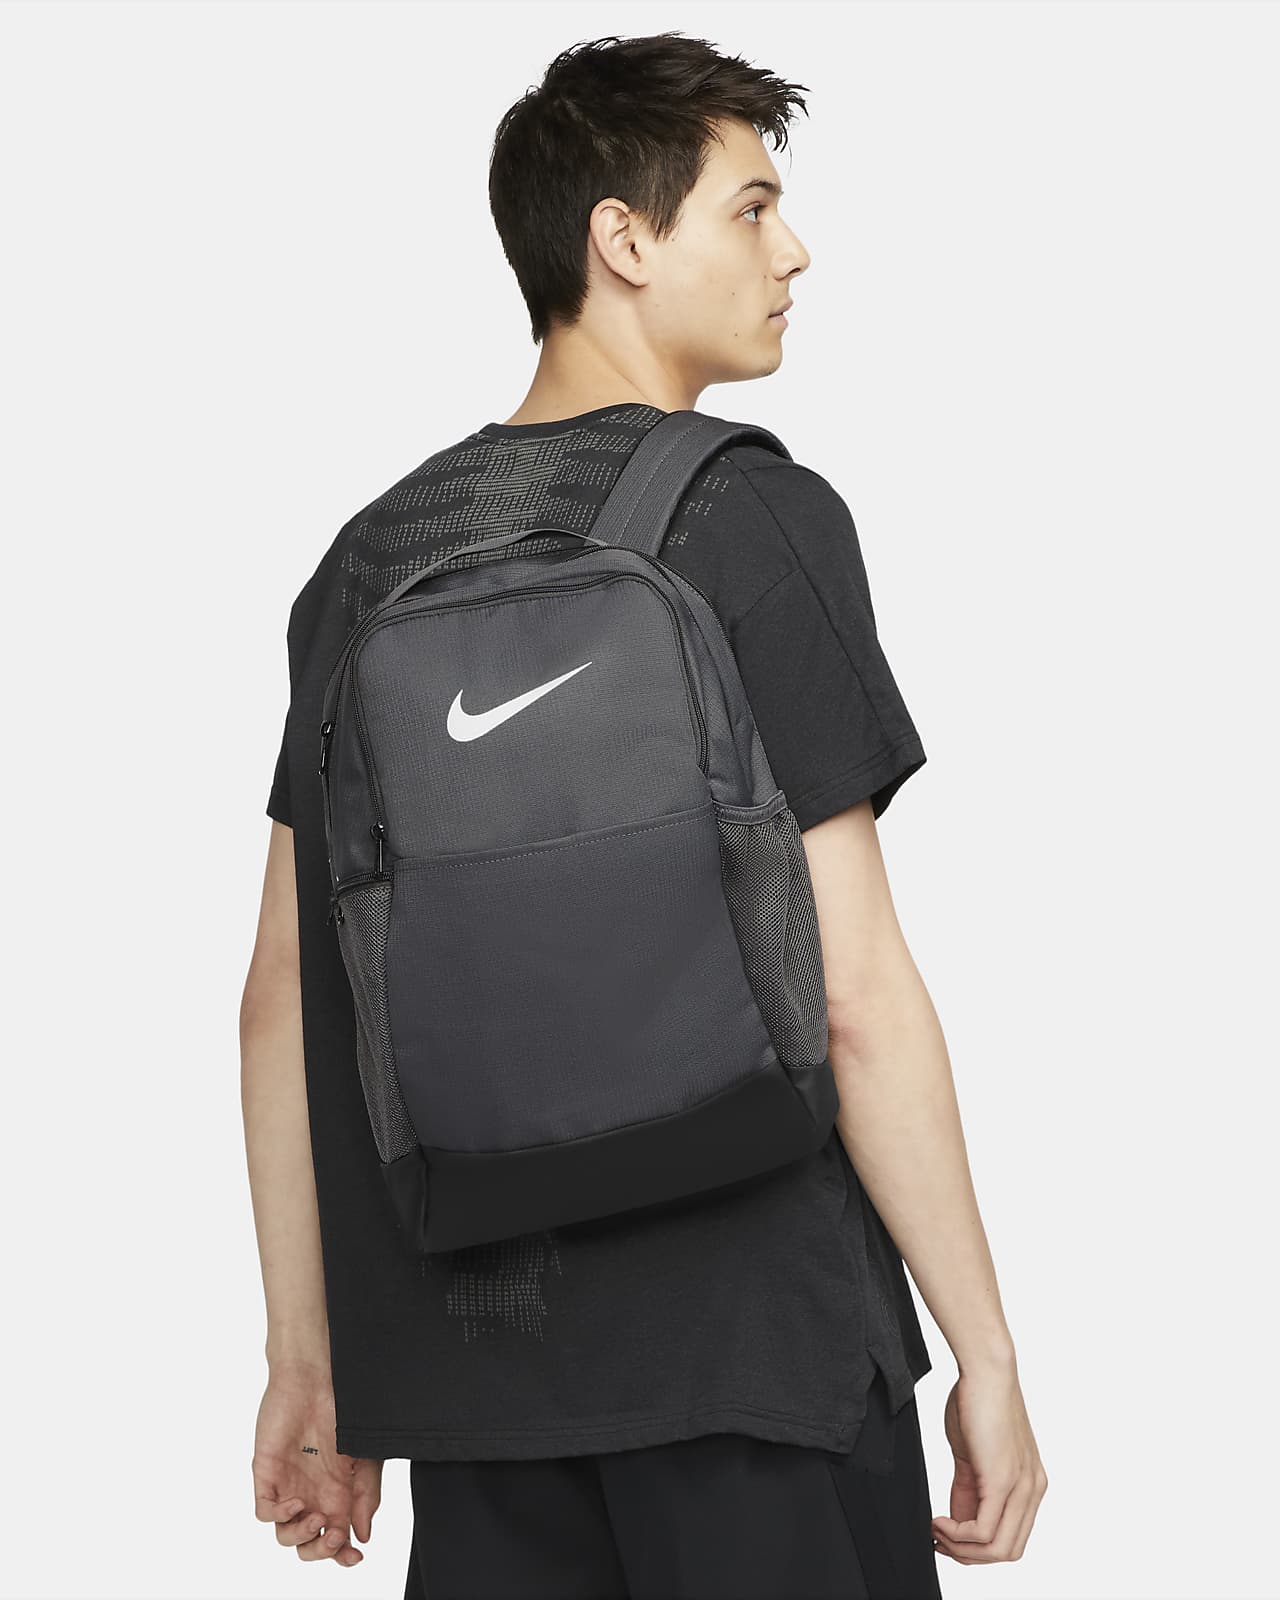 Nike Brasilia 9.5 Backpack : Clothing, Shoes & Jewelry 